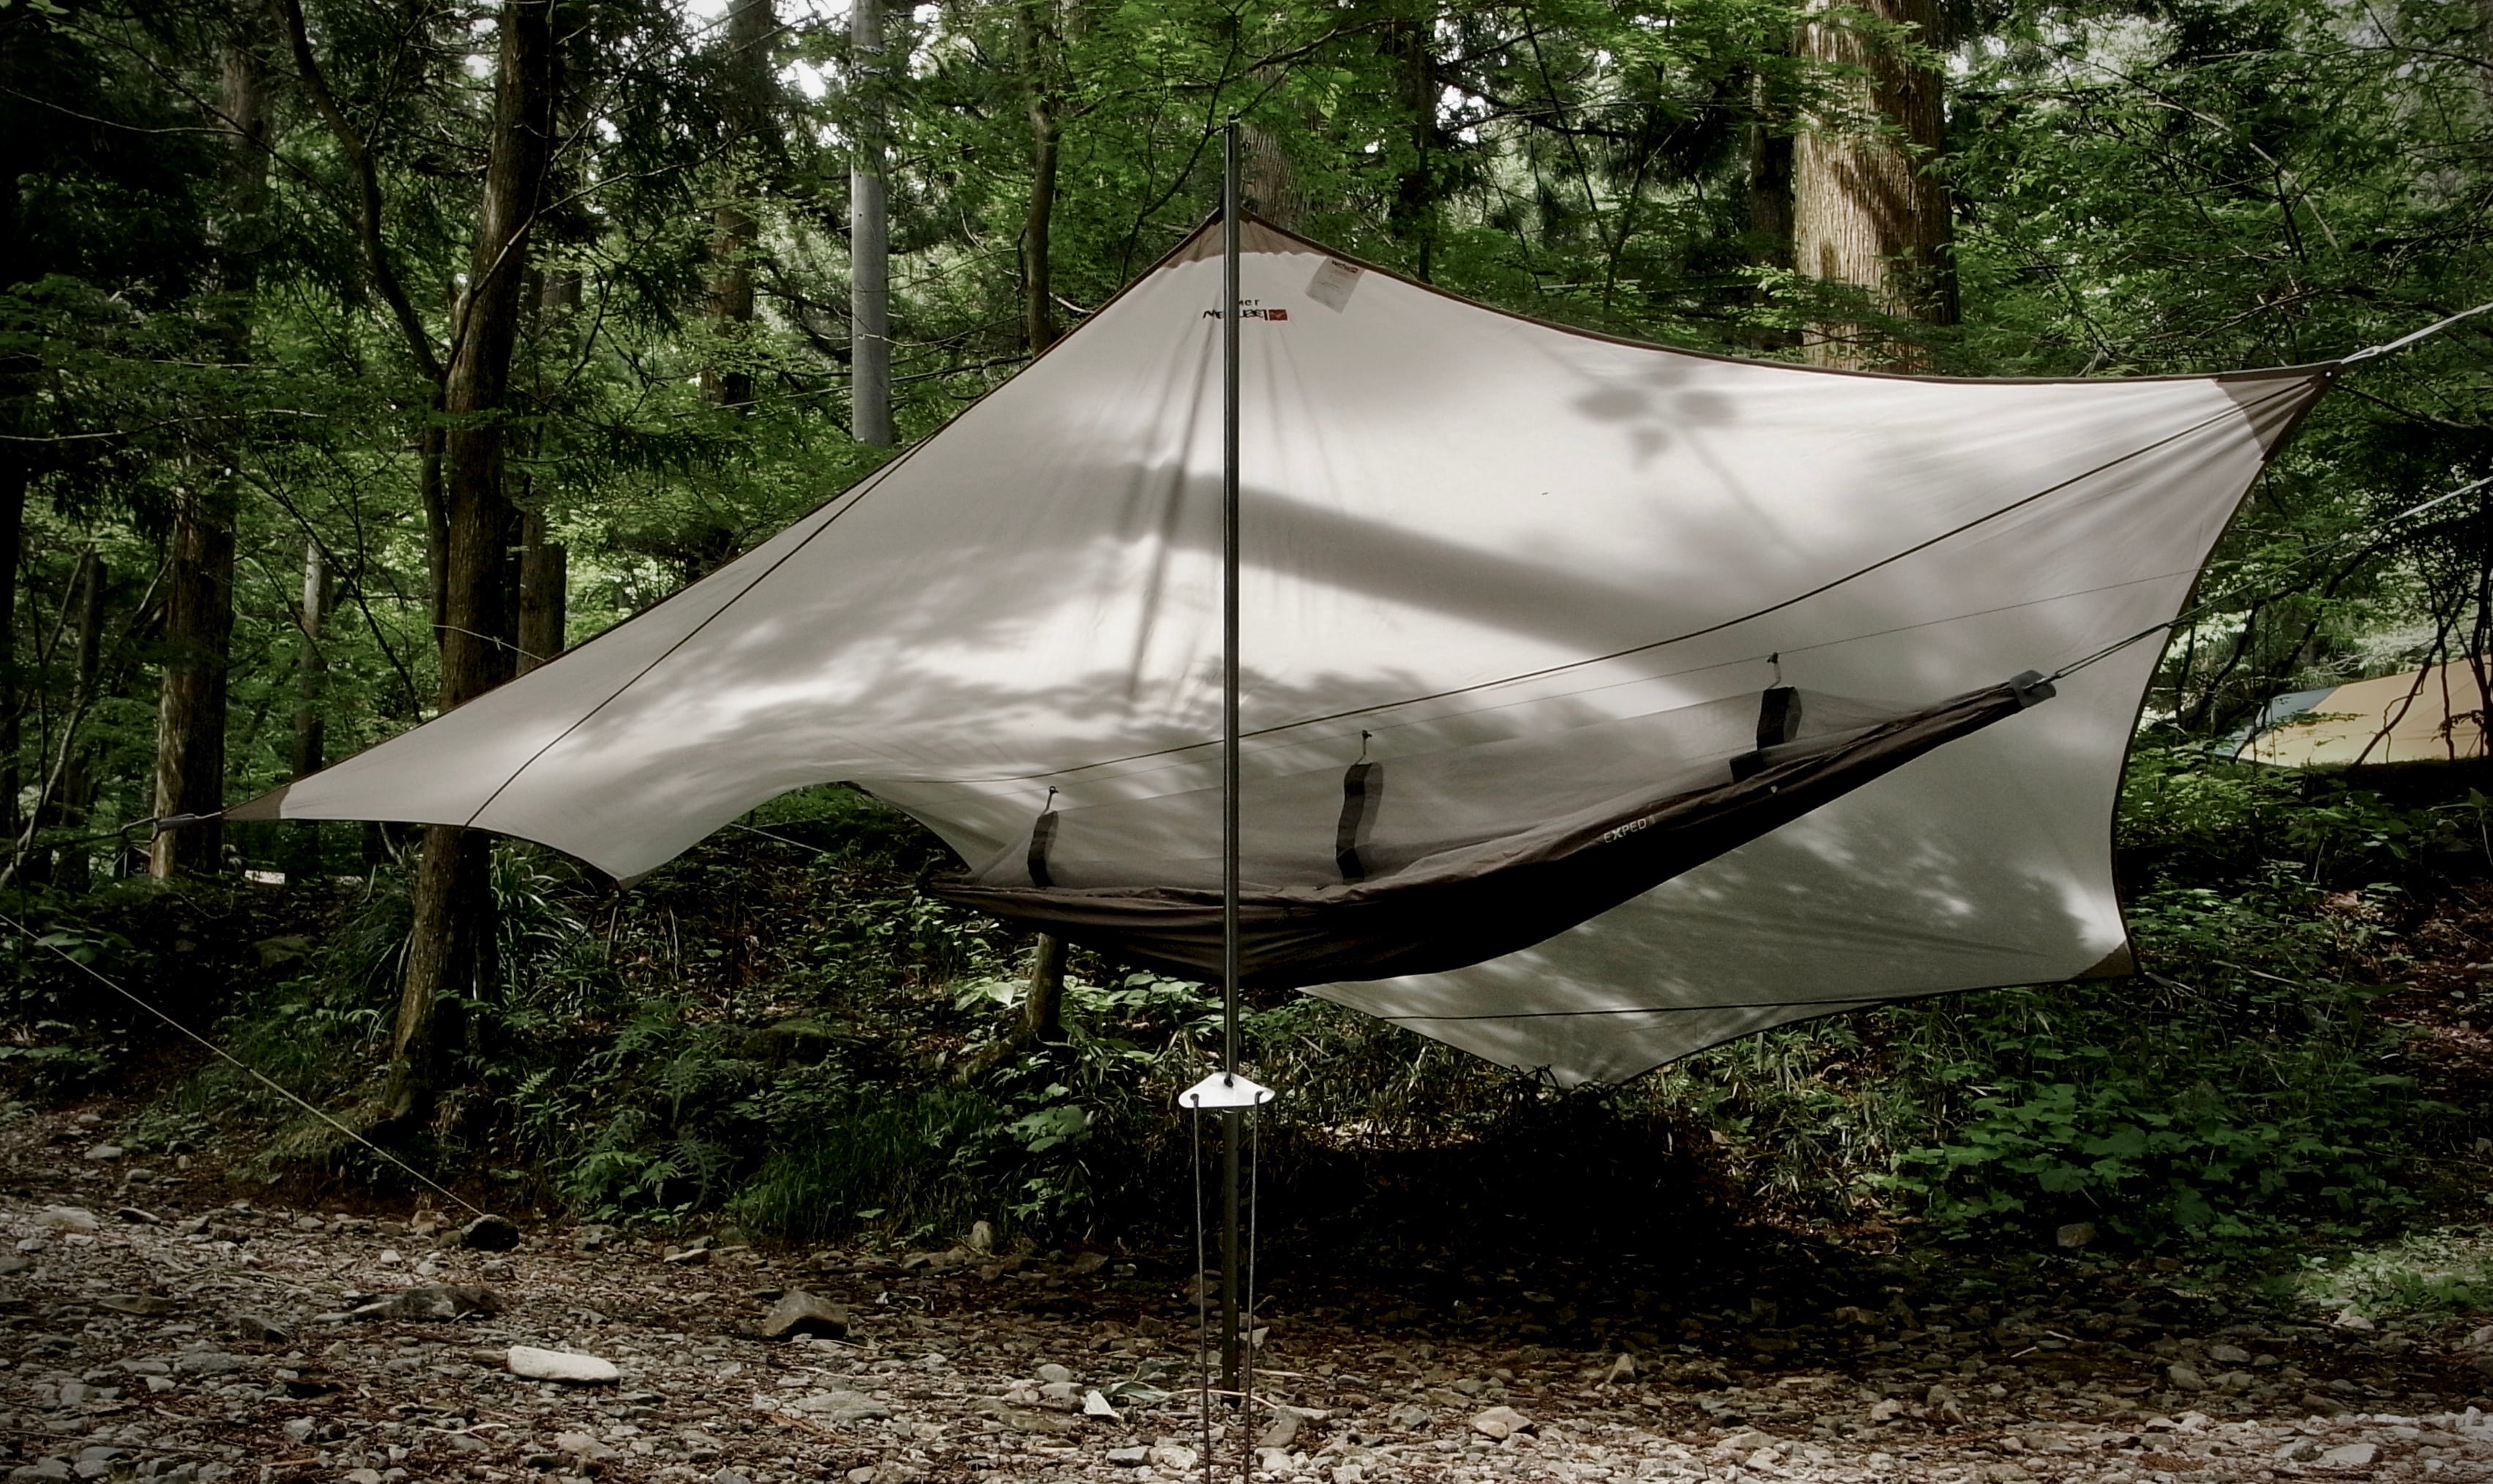 ヴィクセルテント ウィング トラベルライン L / Wechsel-Tents Wing Travel Line L | SECOND STATE  powered by BASE